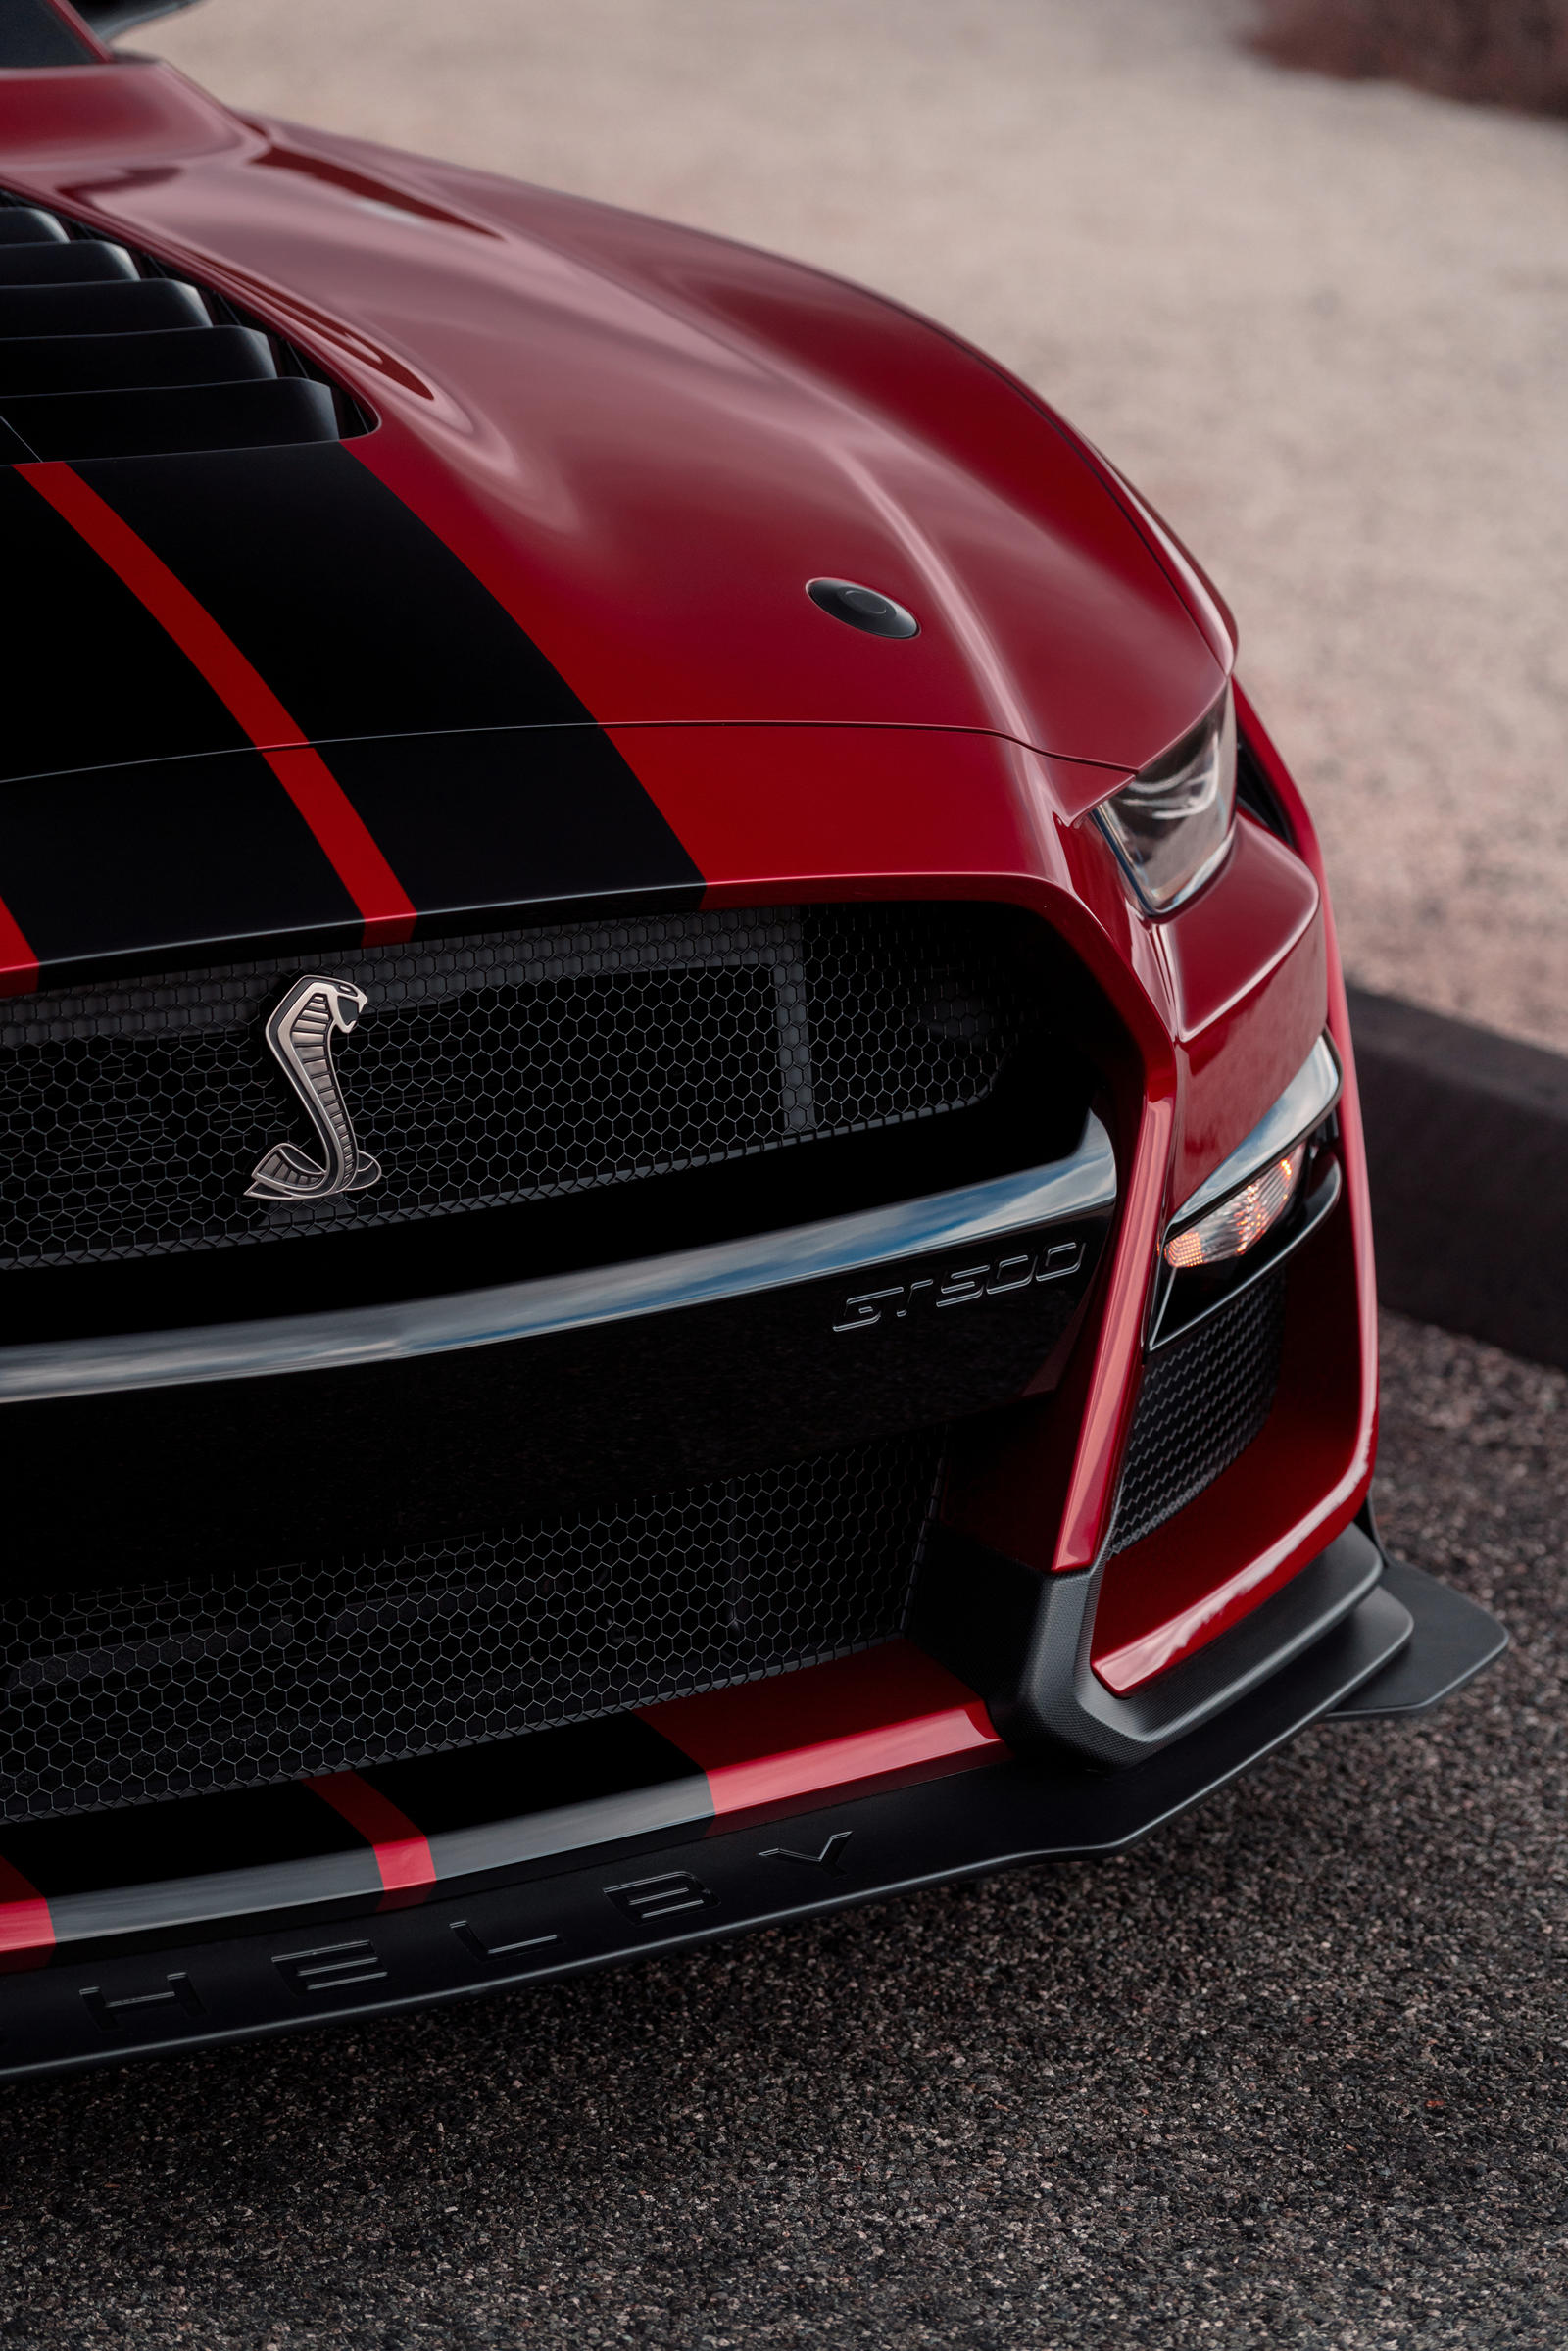 Der ford mustang überzeugt als sportwagen mit verbesserter aerodynamik, modernsten technologien und überarbeitetem design. 2021 Ford Mustang Shelby GT500 Getting Surprise Update